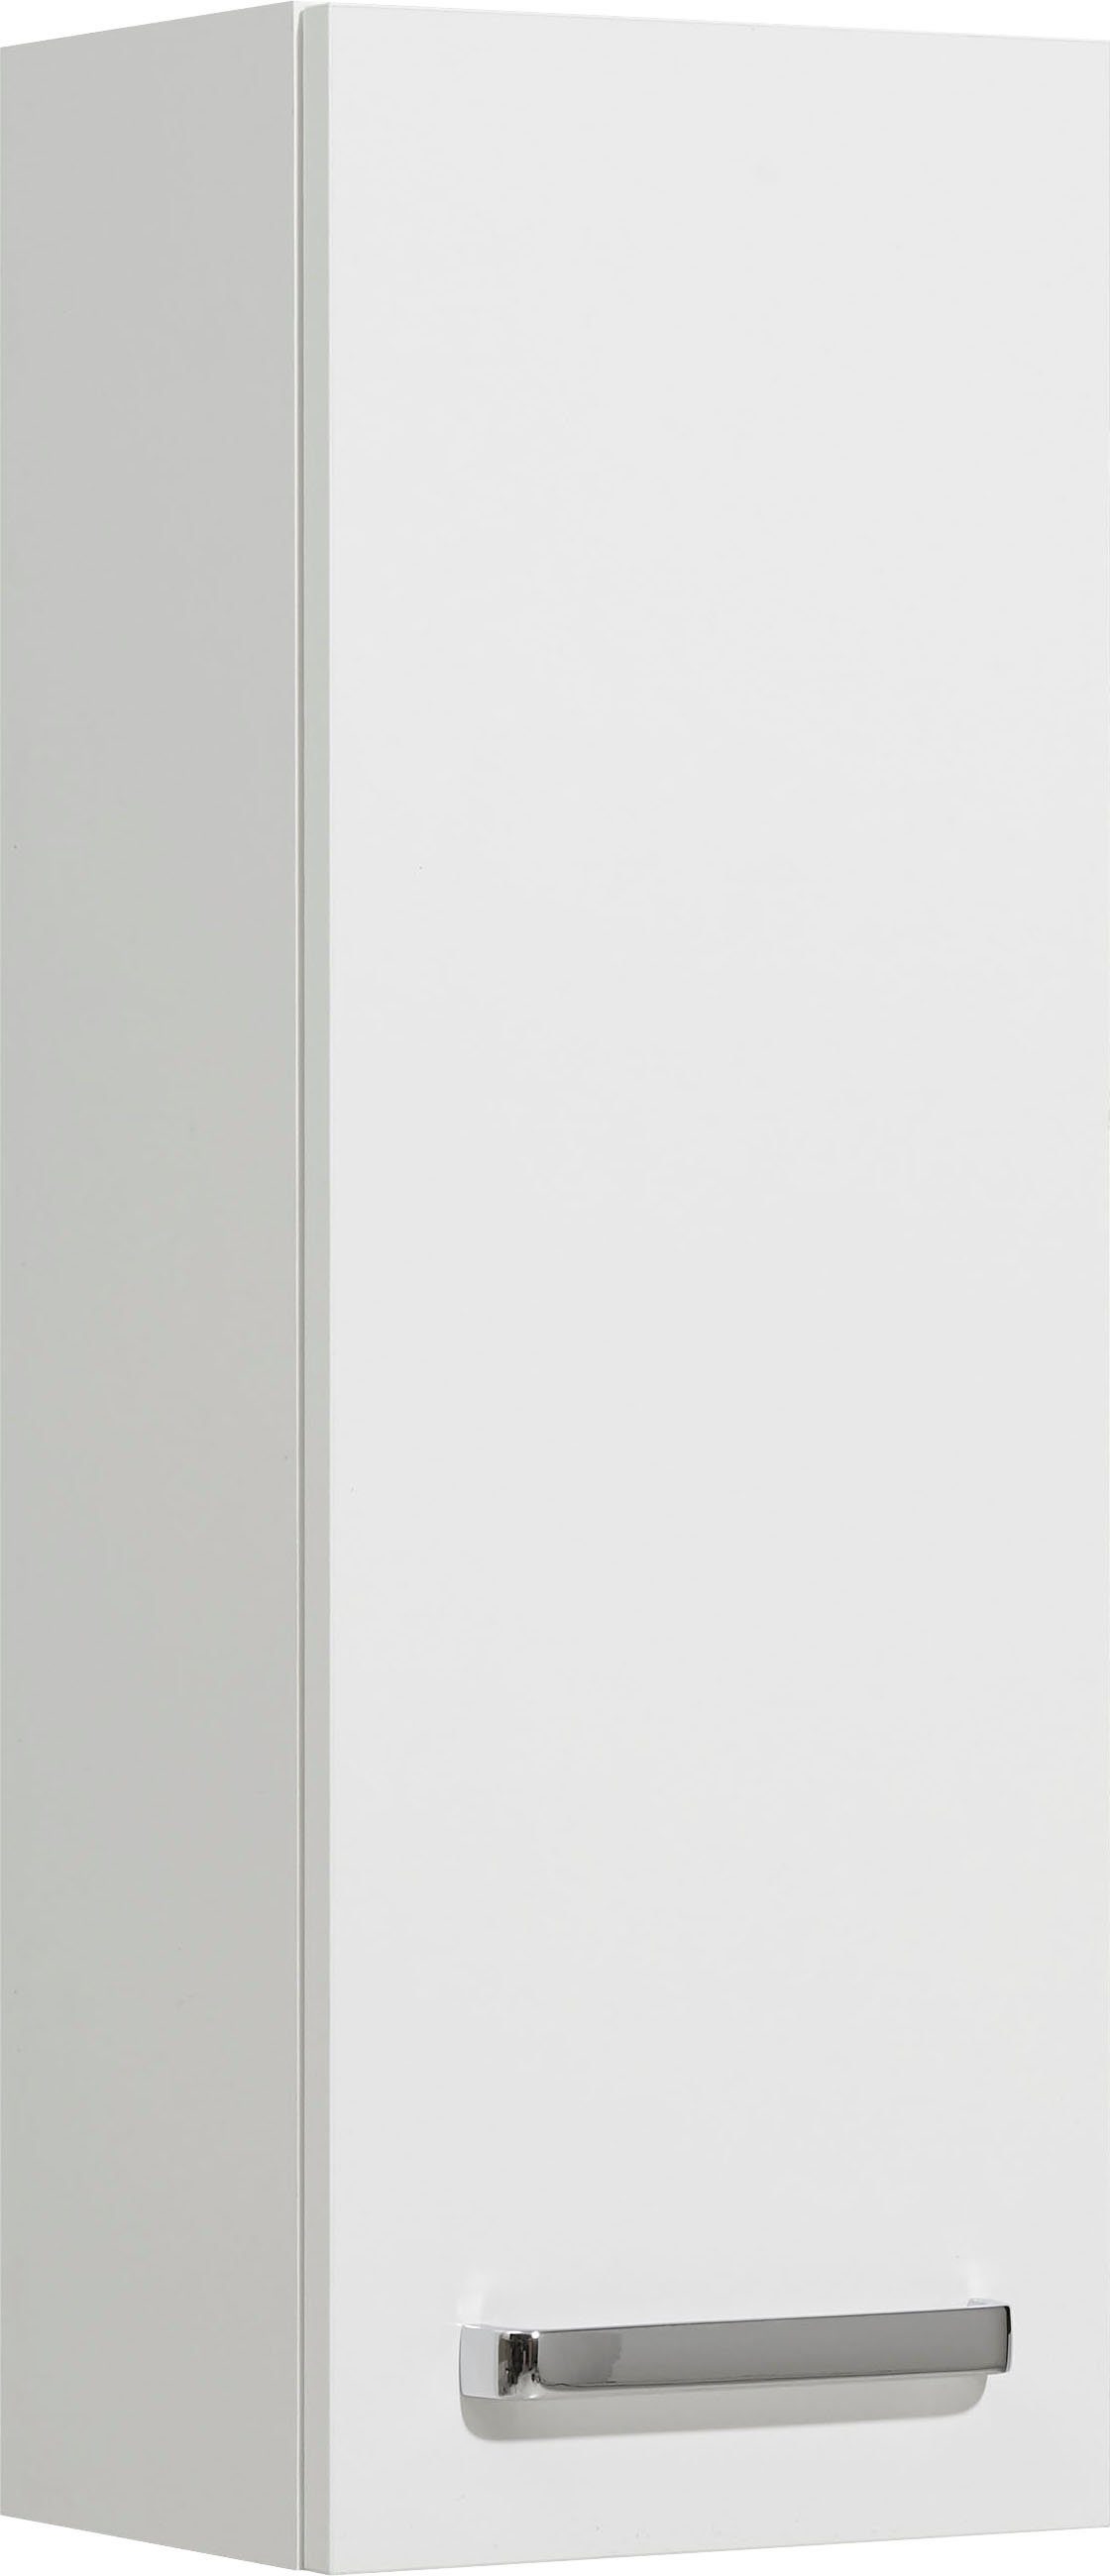 Saphir Hängeschrank Quickset Wand-Badschrank 25 cm breit mit 1 Tür und 2 Einlegeböden Badezimmer-Hängeschrank inkl. Türdämpfer, Griffe in Chrom Glanz